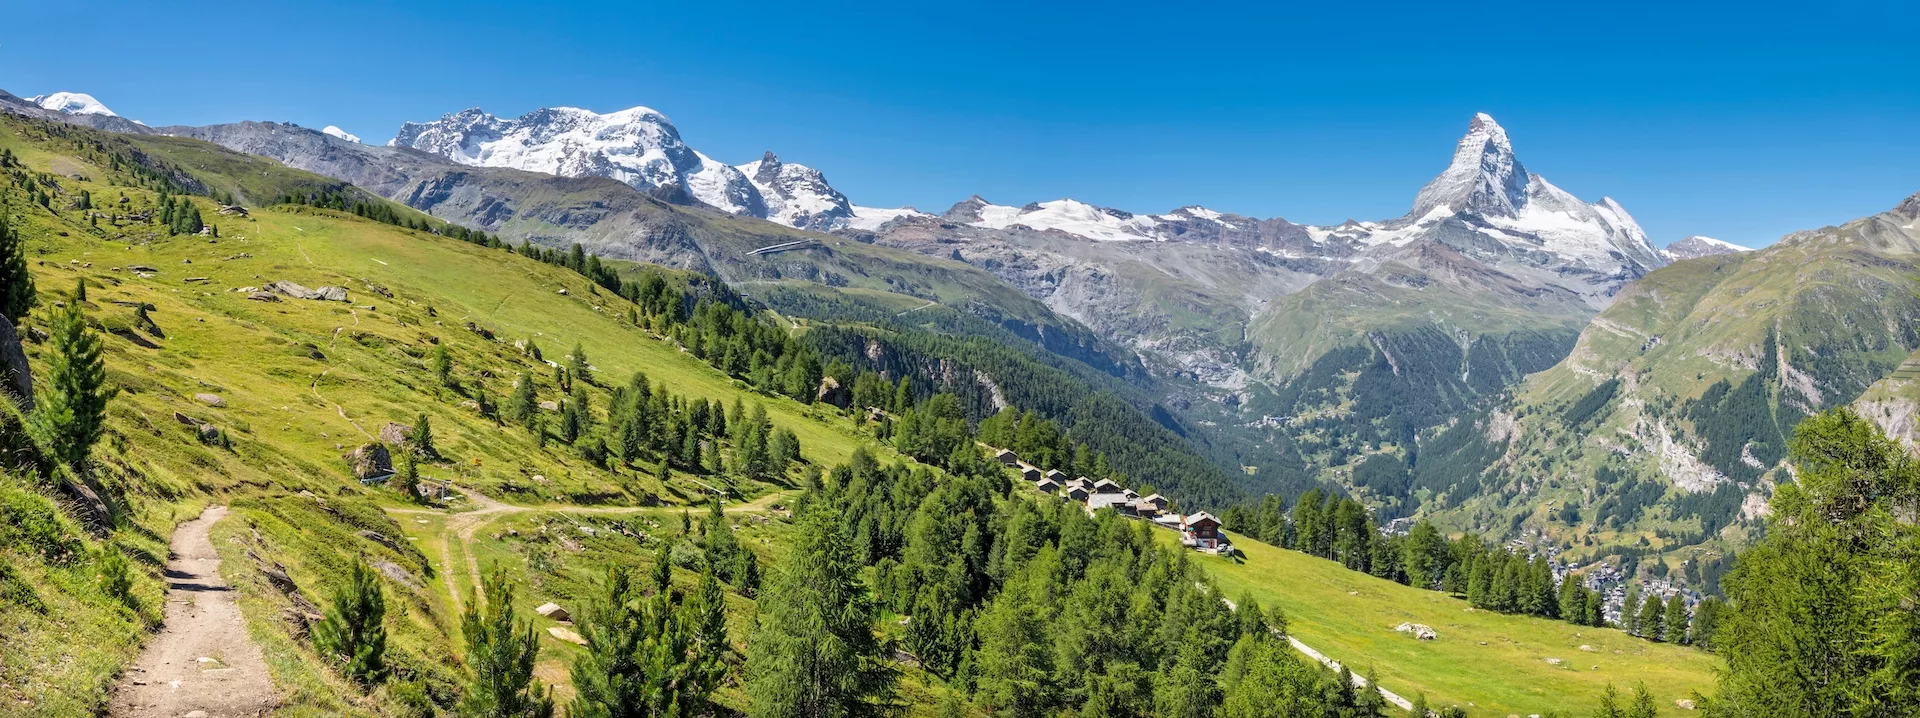 Das Panorama der Schweizer Walliser Alpen mit dem Matterhorn und dem Breithorn